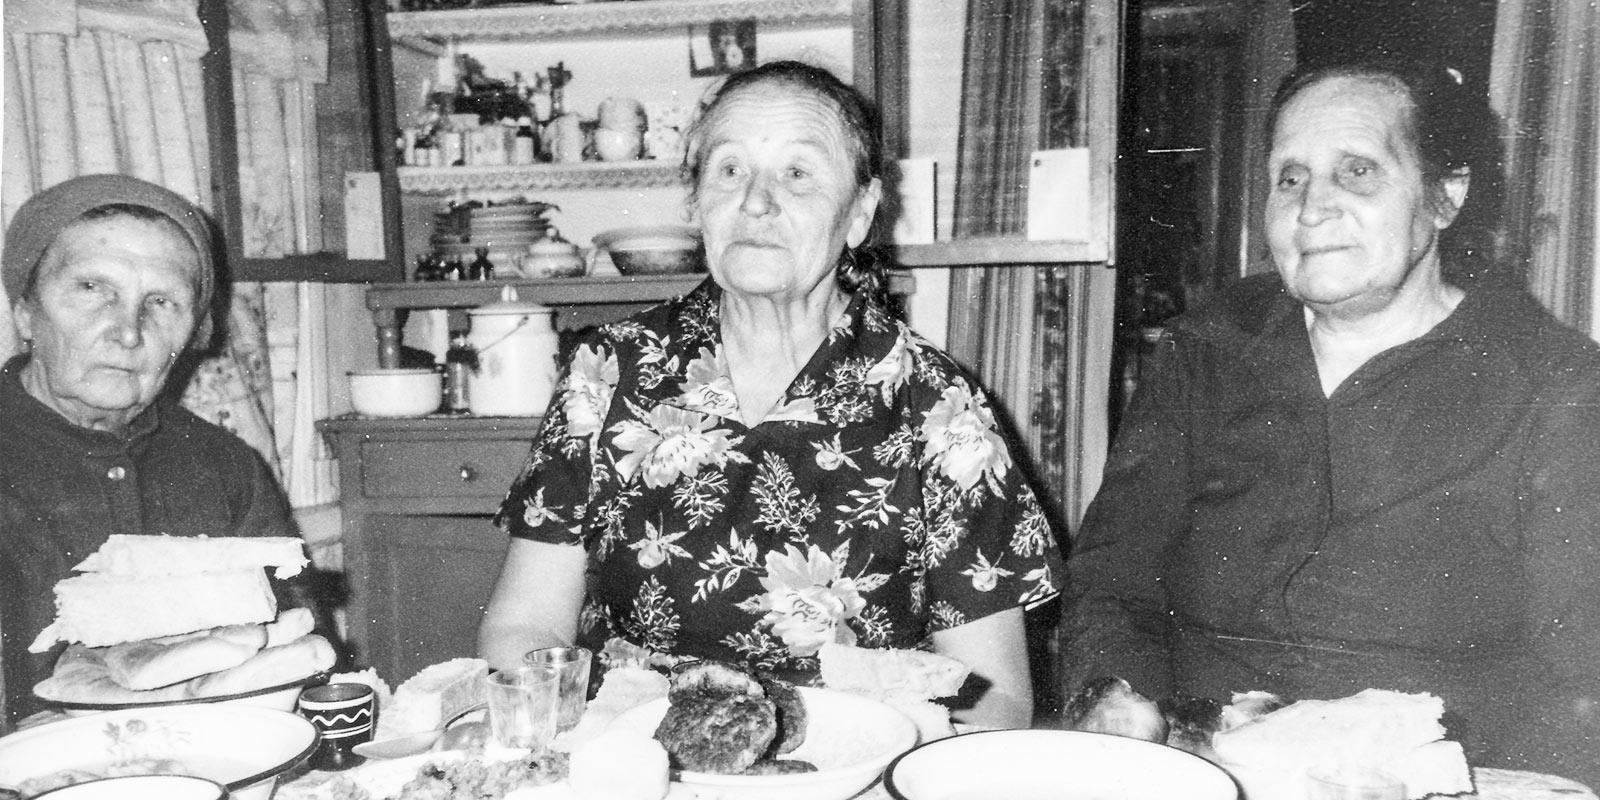 Ülem-Suetuki küla laulikud: Anni Uhvelt, Miina Pavlov ja Maali Pool. Foto: K. Peebo 1992. ERA, Foto 15011.